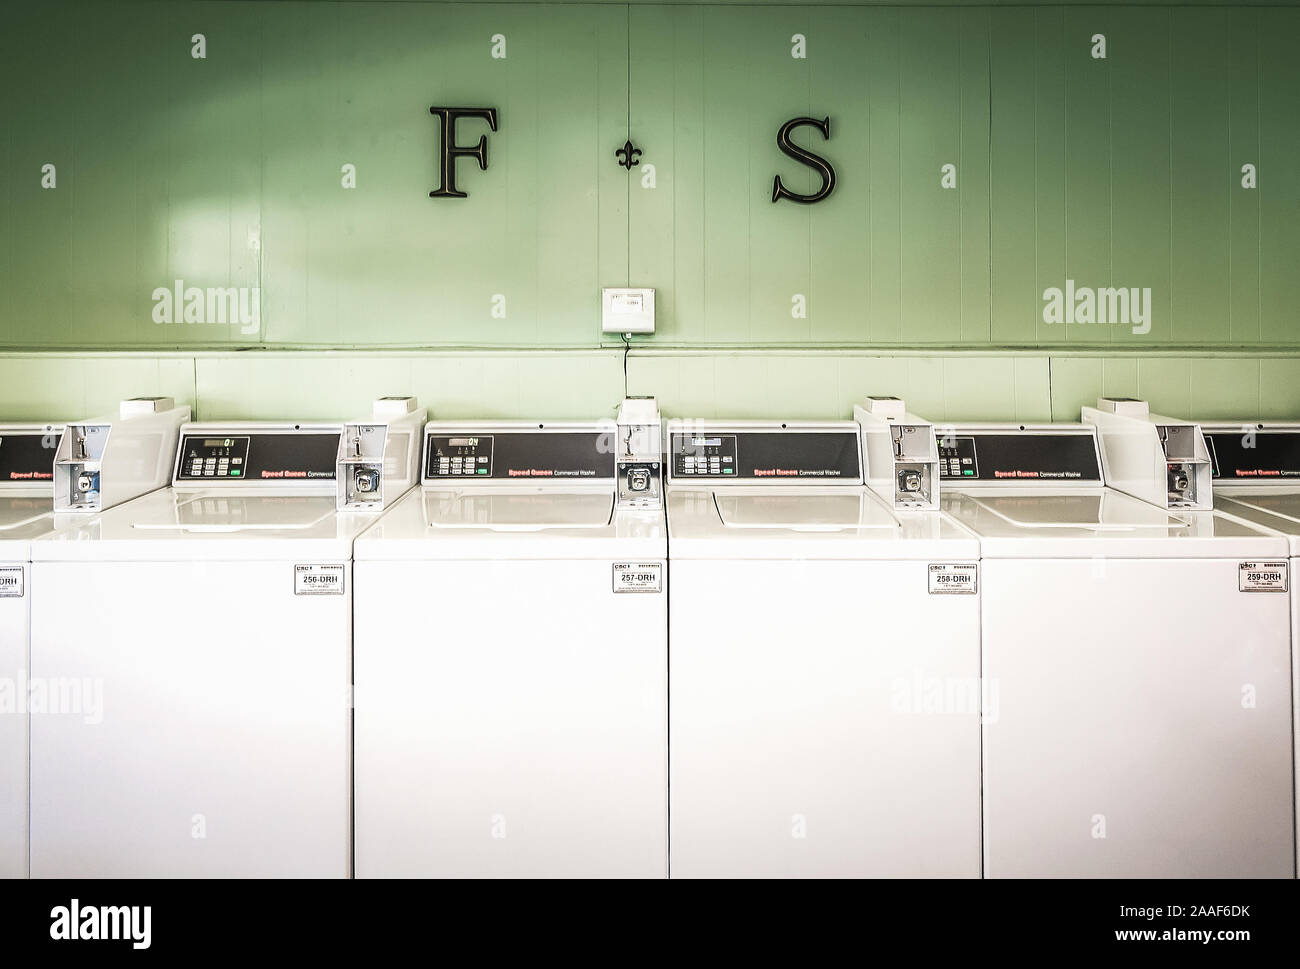 Waschmaschinen sind dargestellt in der Waschküche im Four Seasons Apartments in Mobile, Alabama. Der Apartment Komplex ist von Sealy Management verwaltet. Stockfoto